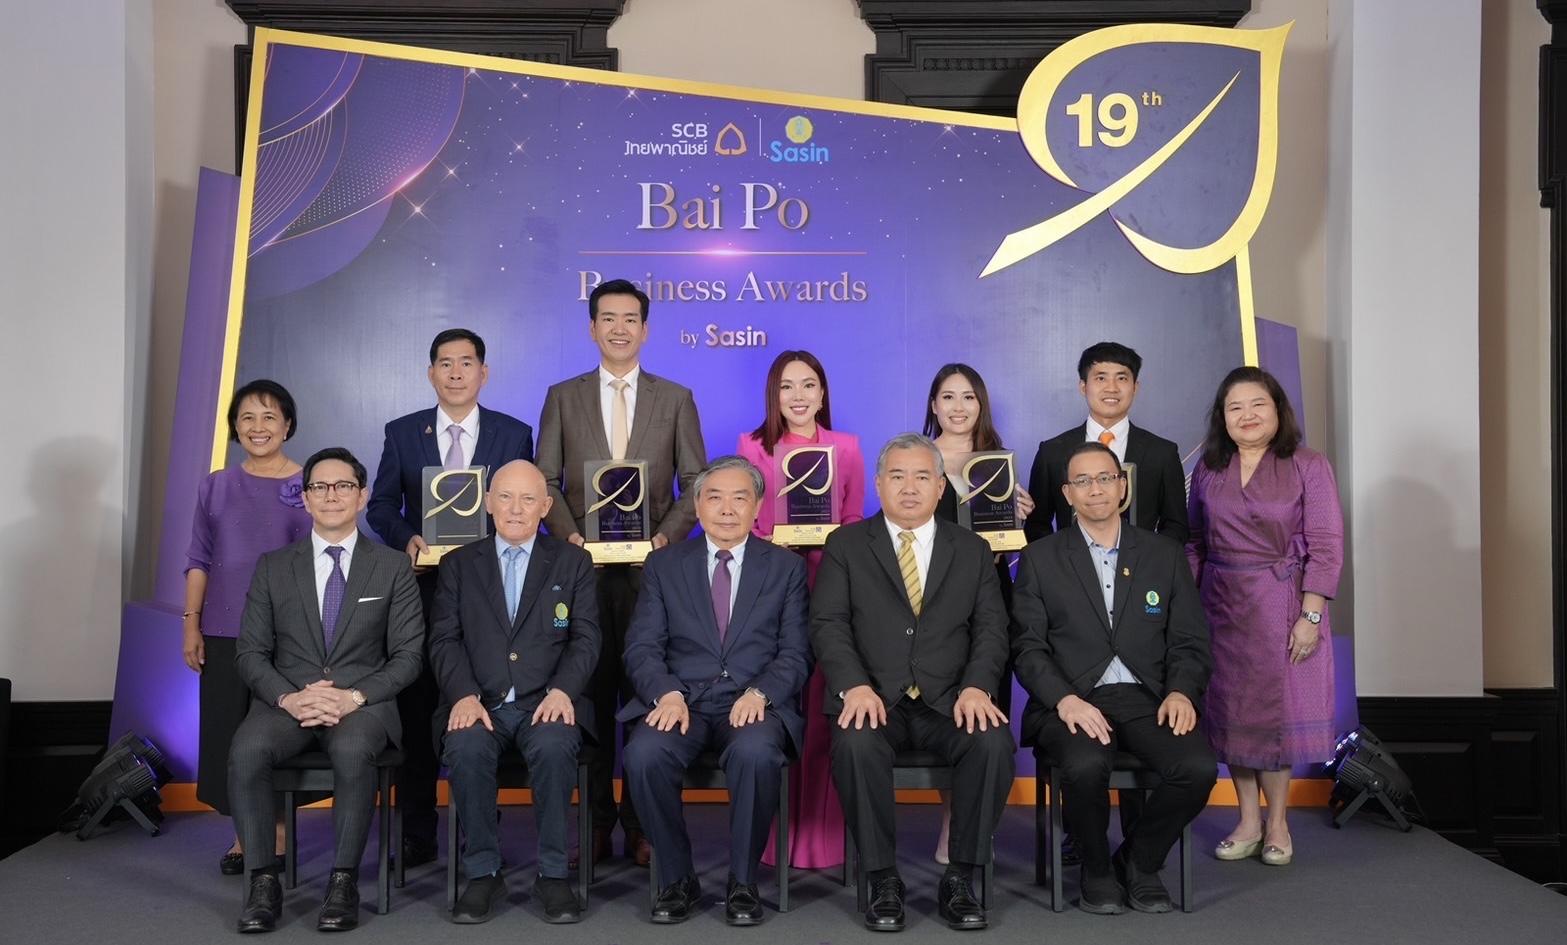 ไทยพาณิชย์ร่วมกับศศินทร์มอบรางวัลเชิดชูเอสเอ็มอีไทย 5 บริษัทคว้ารางวัลเกียรติยศ Bai Po Business Awards by Sasin ครั้งที่ 19โชว์วิสัยทัศน์ทำธุรกิจยั่งยืนสู่อนาคต